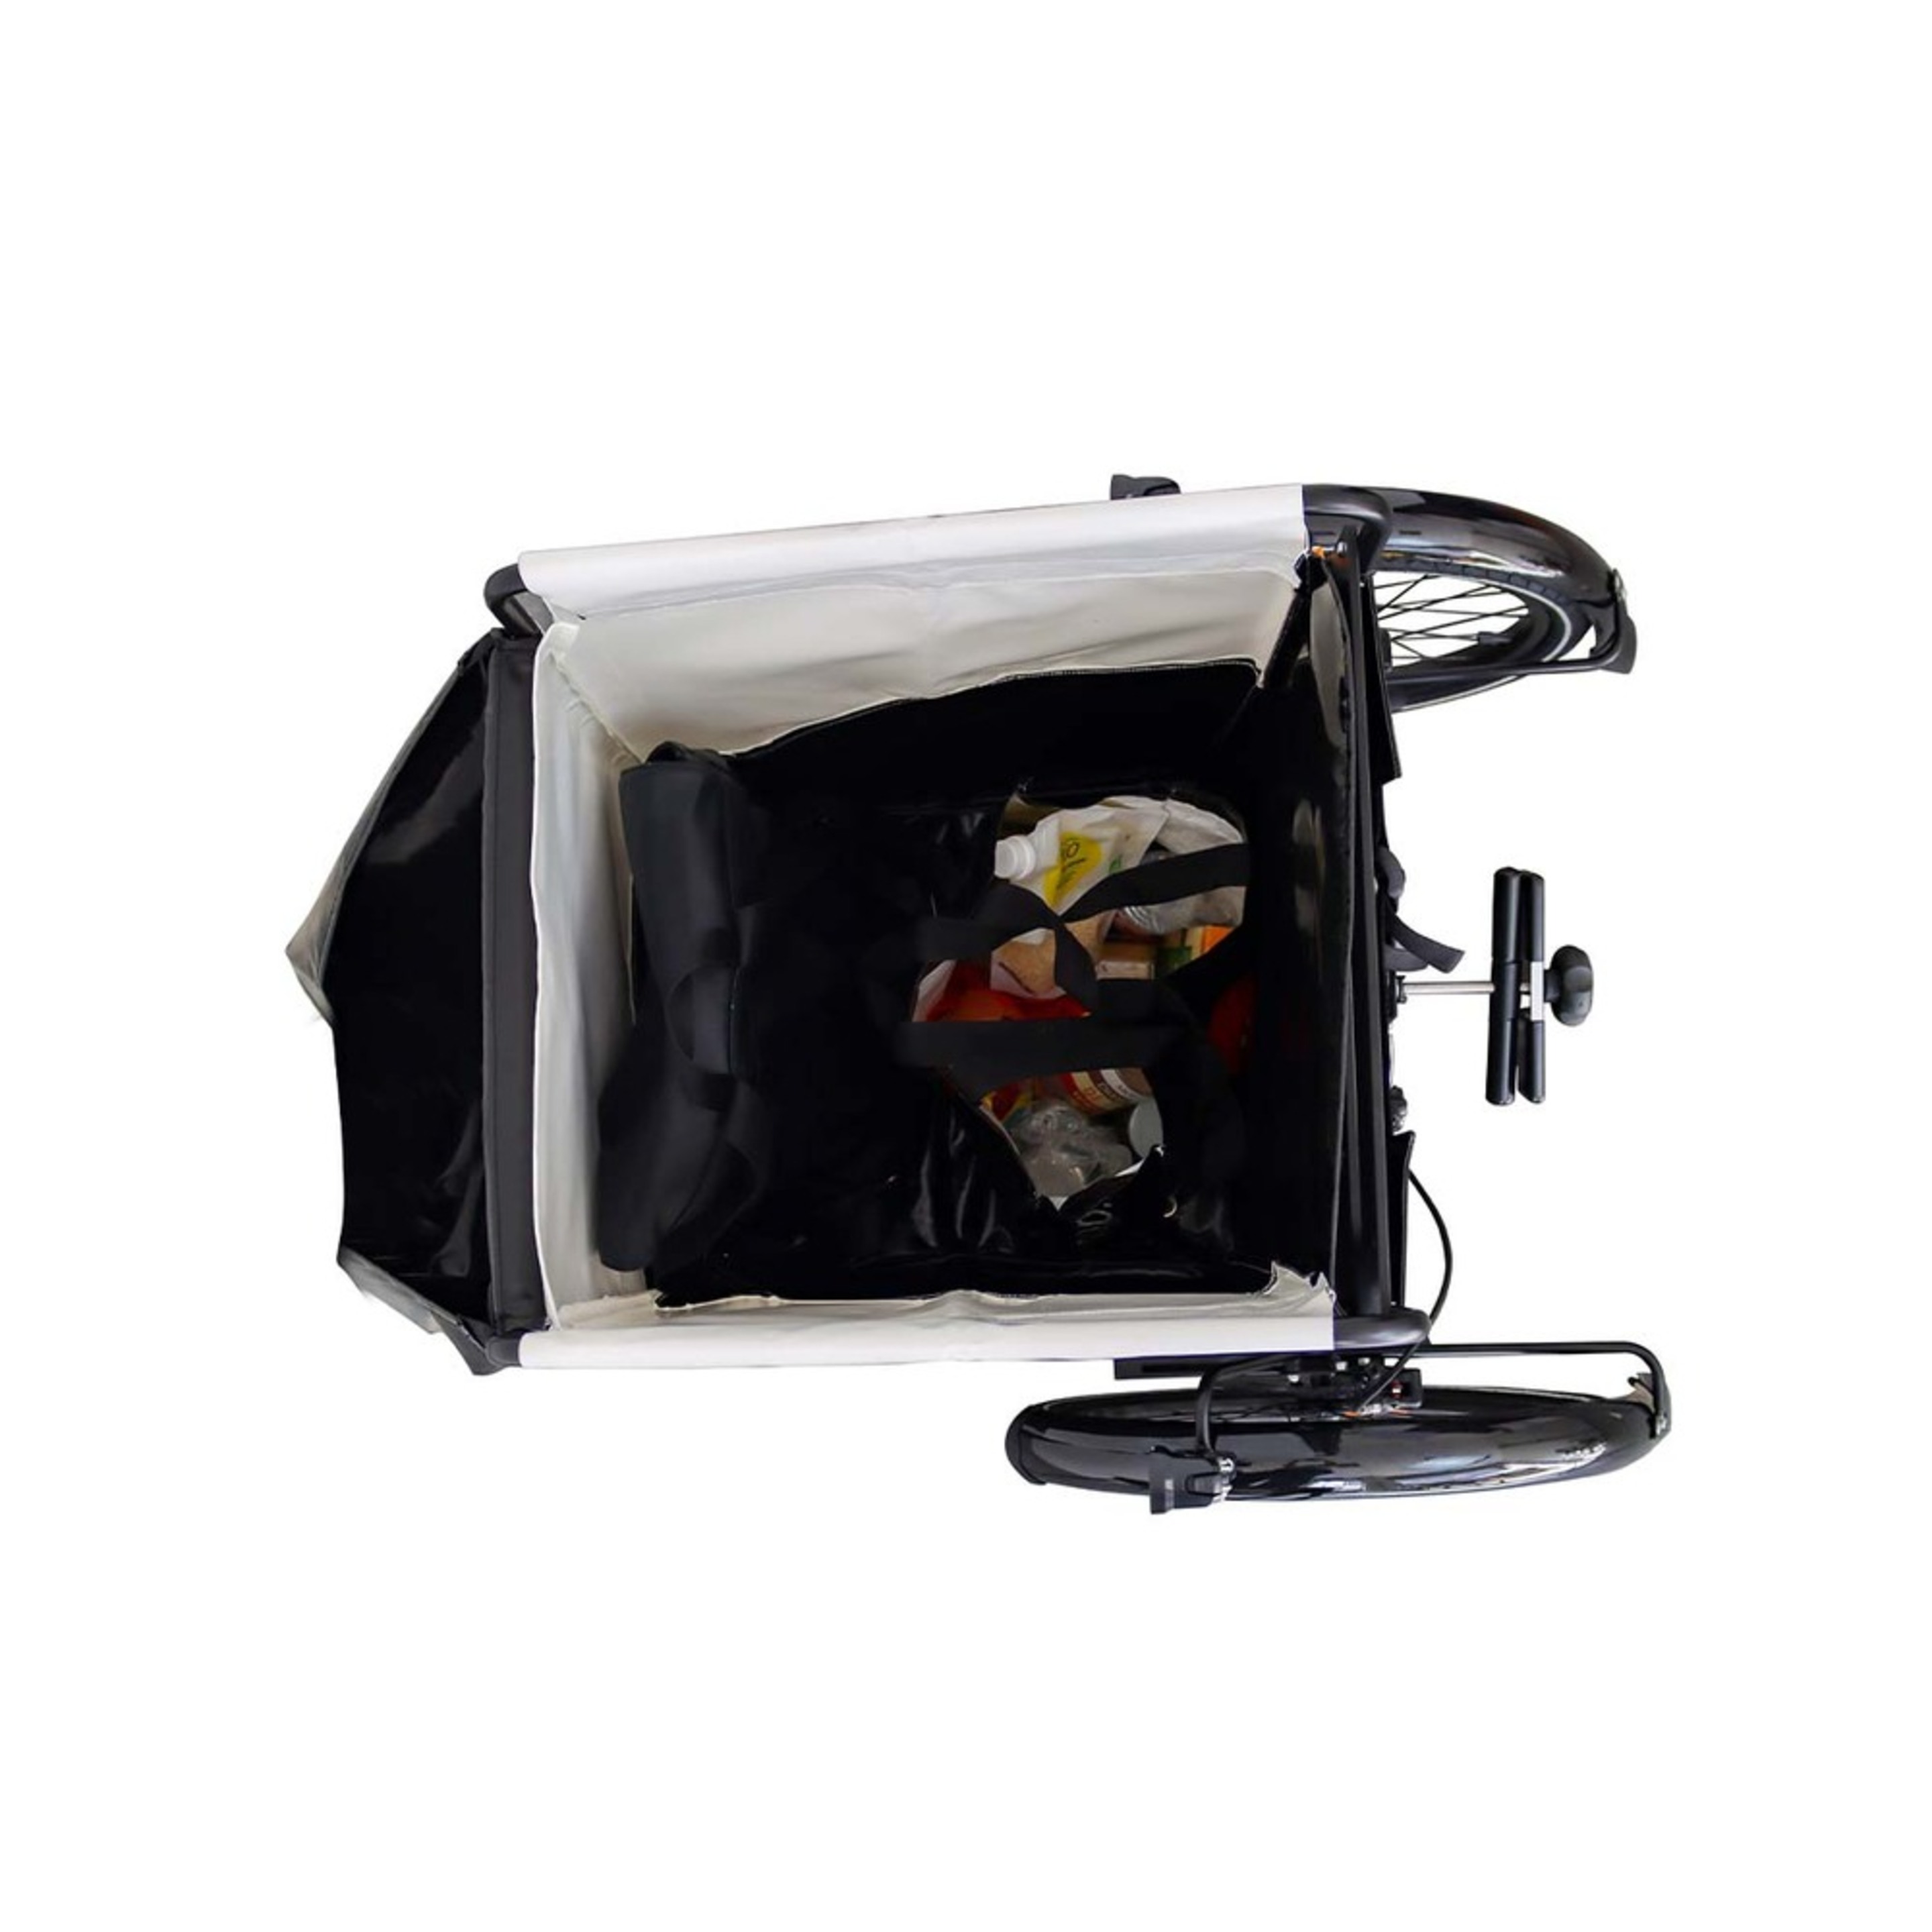 Kit Frontal: Transporte De Carga - Addbike Box Kit - Cinzento/Preto - Kit frontal: Transporte de carga | Sport Zone MKP